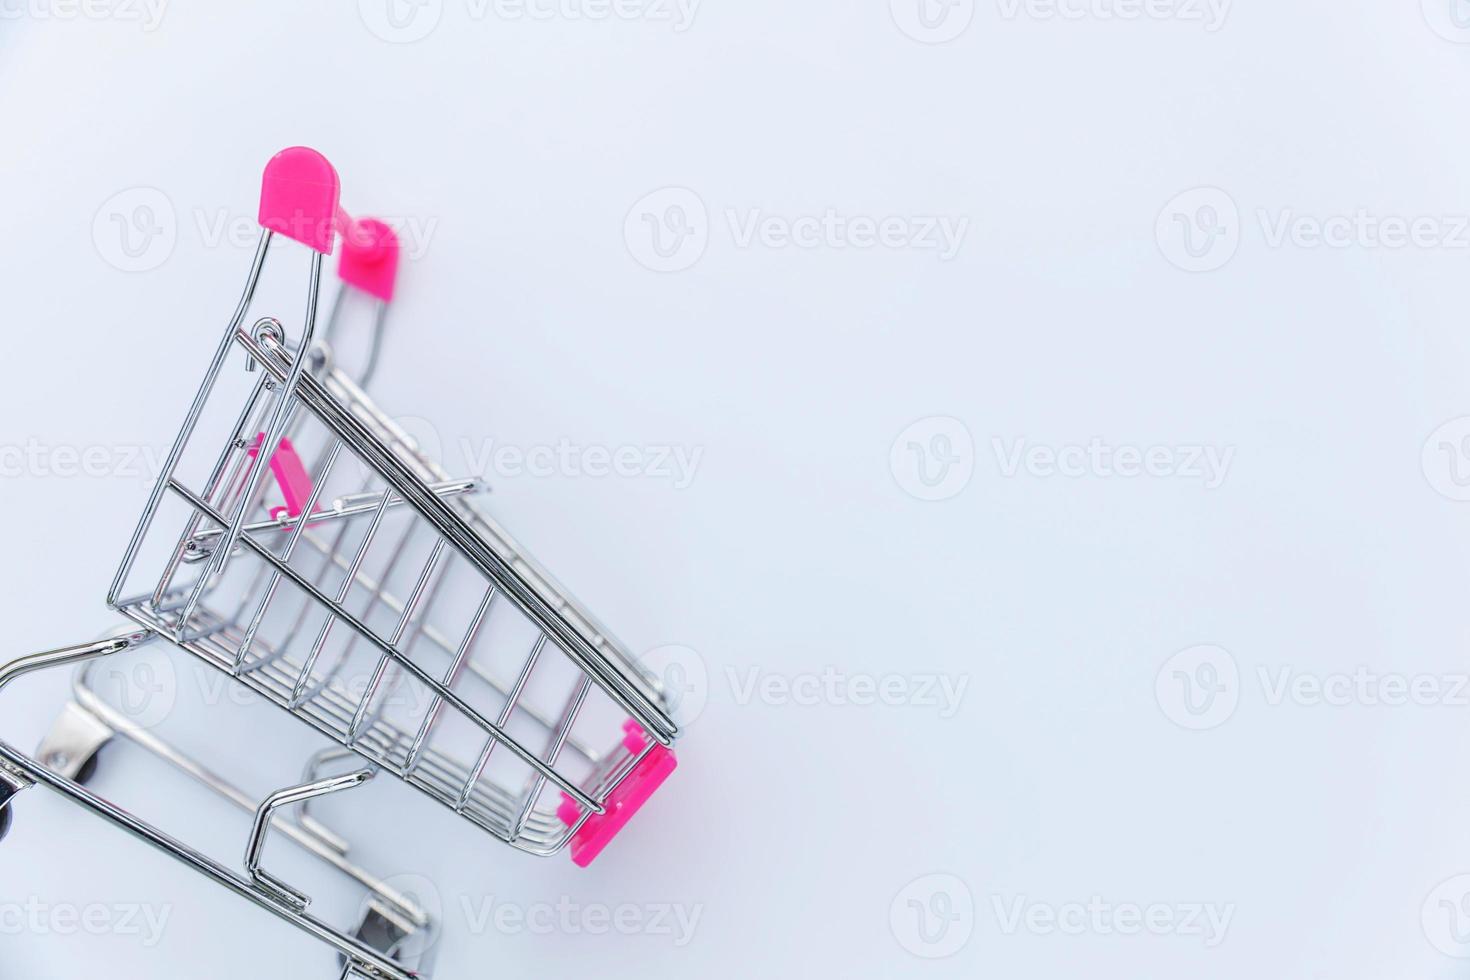 liten stormarknad livsmedelsbutik push-vagn för shopping leksak med hjul isolerad på vit bakgrund. rea köpa köpcentret marknaden butik konsument koncept. kopieringsutrymme. foto